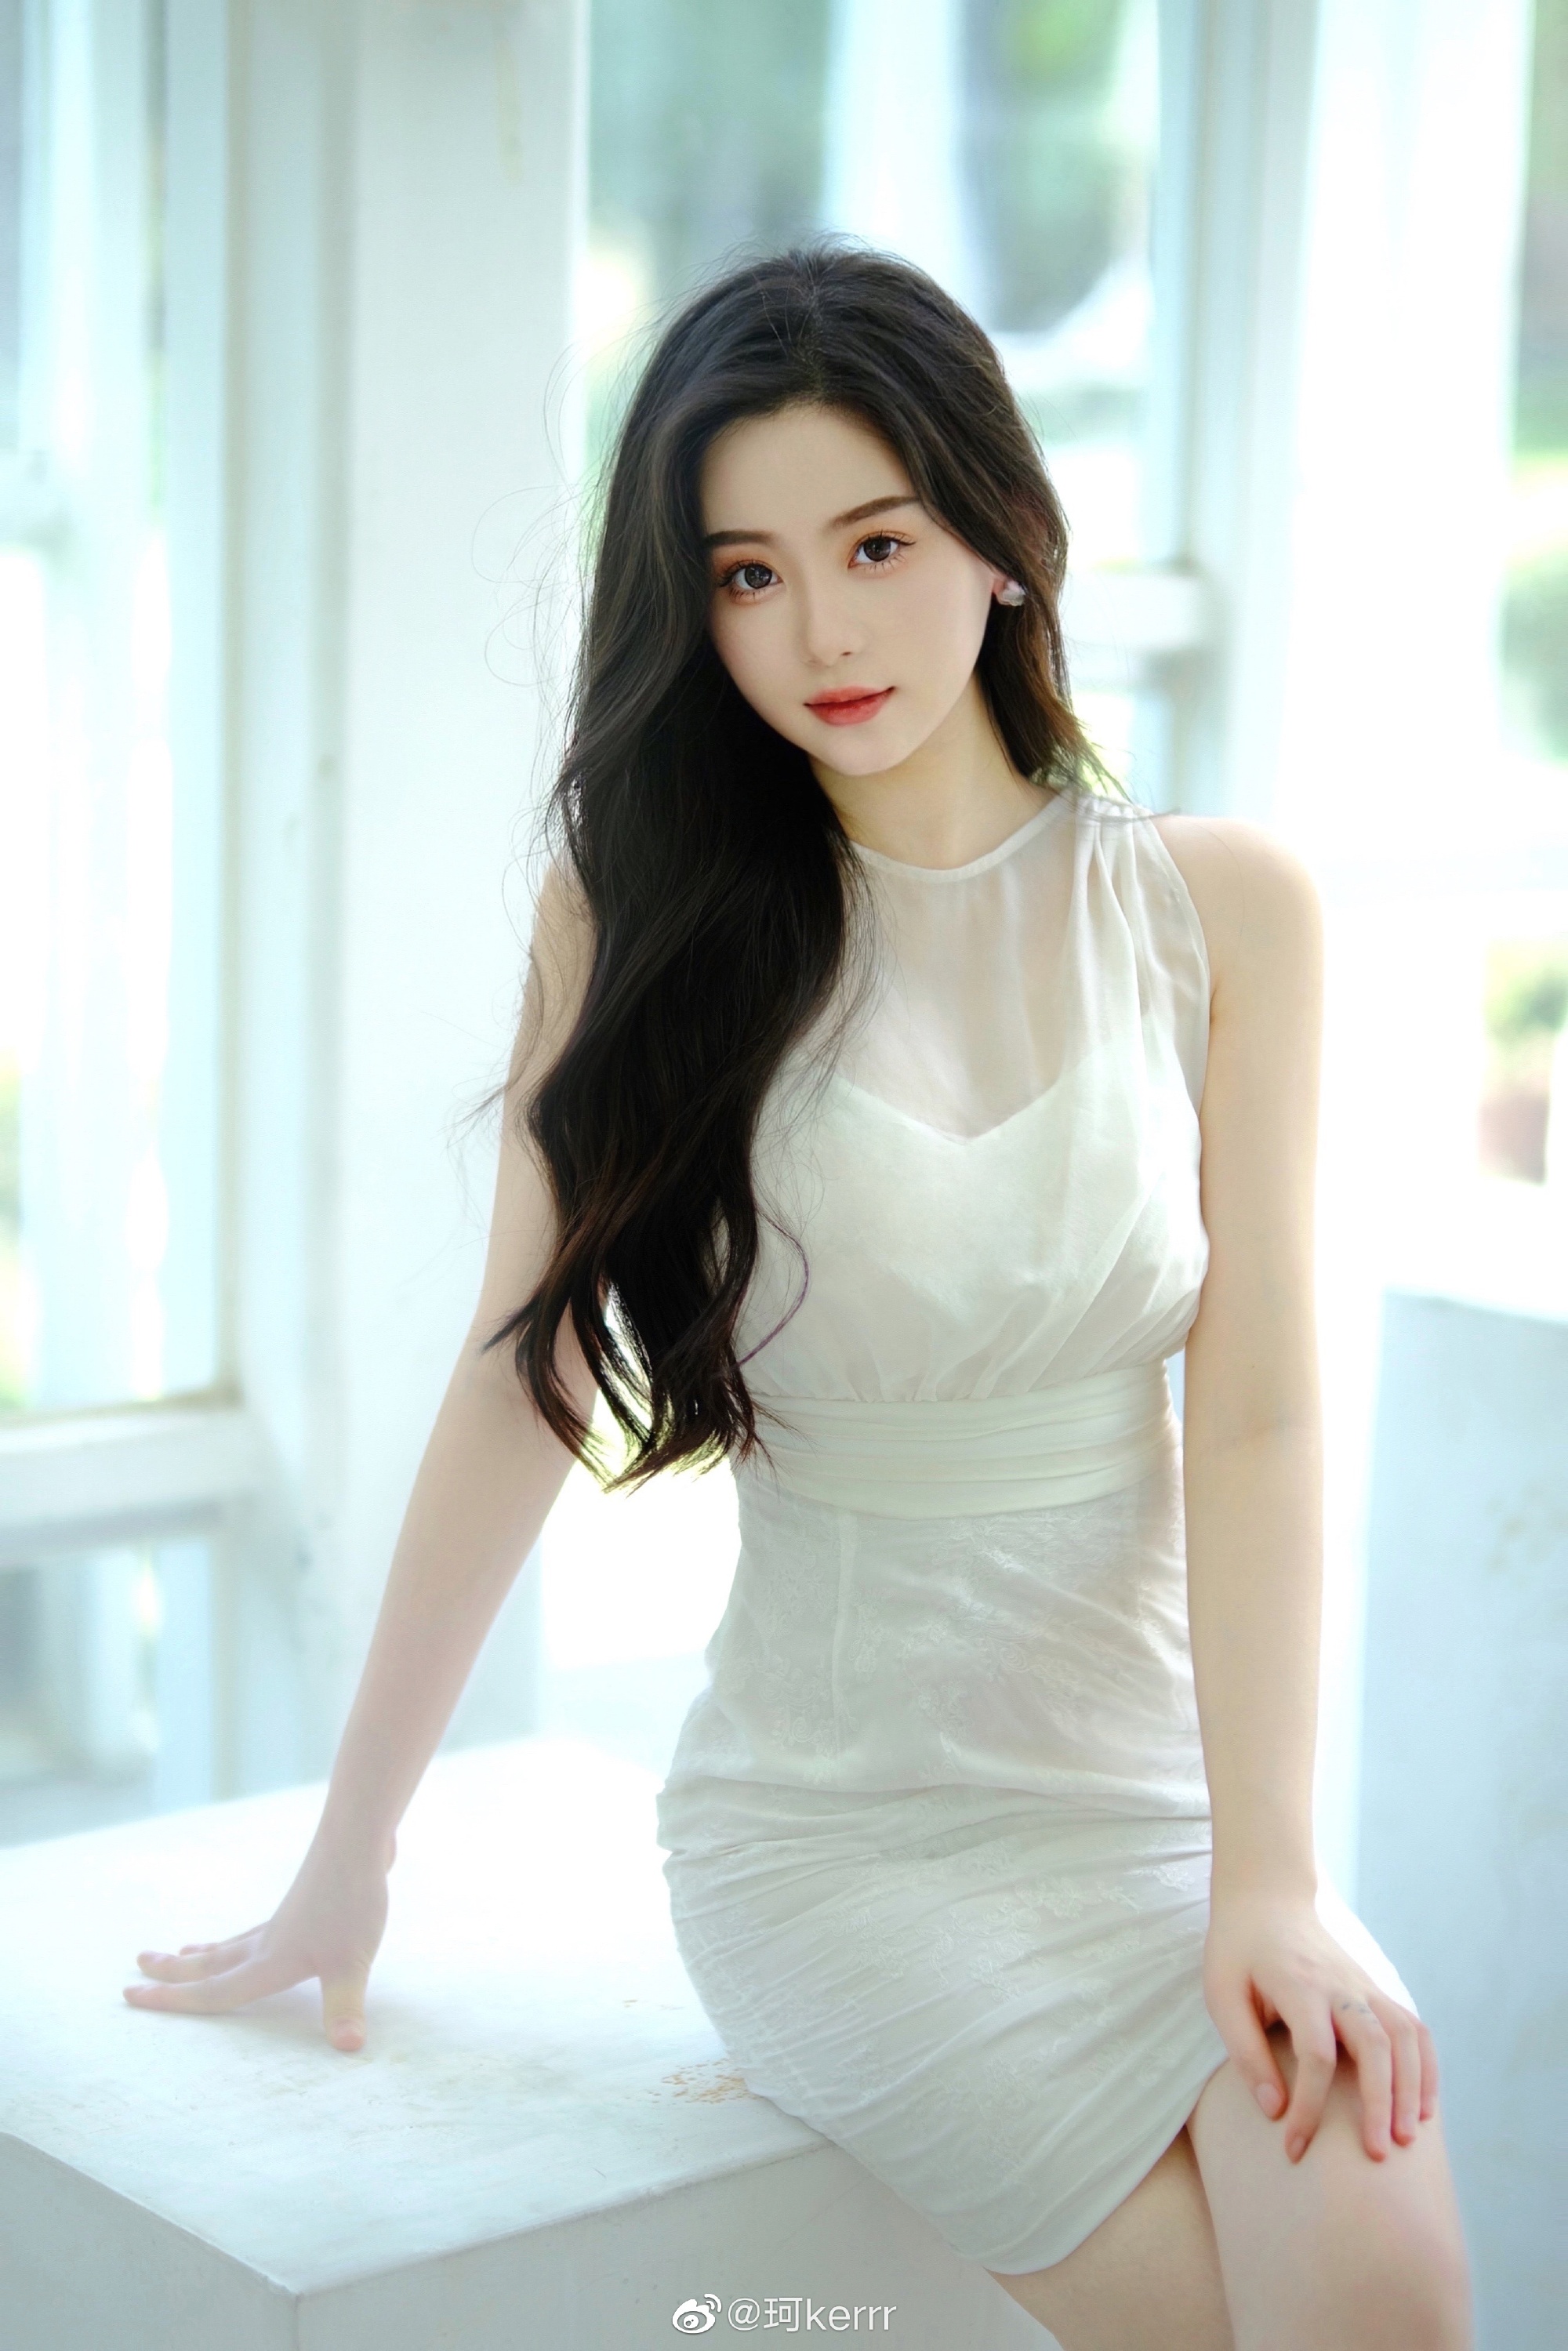 Huang Xiaoming’s ex girlfriend